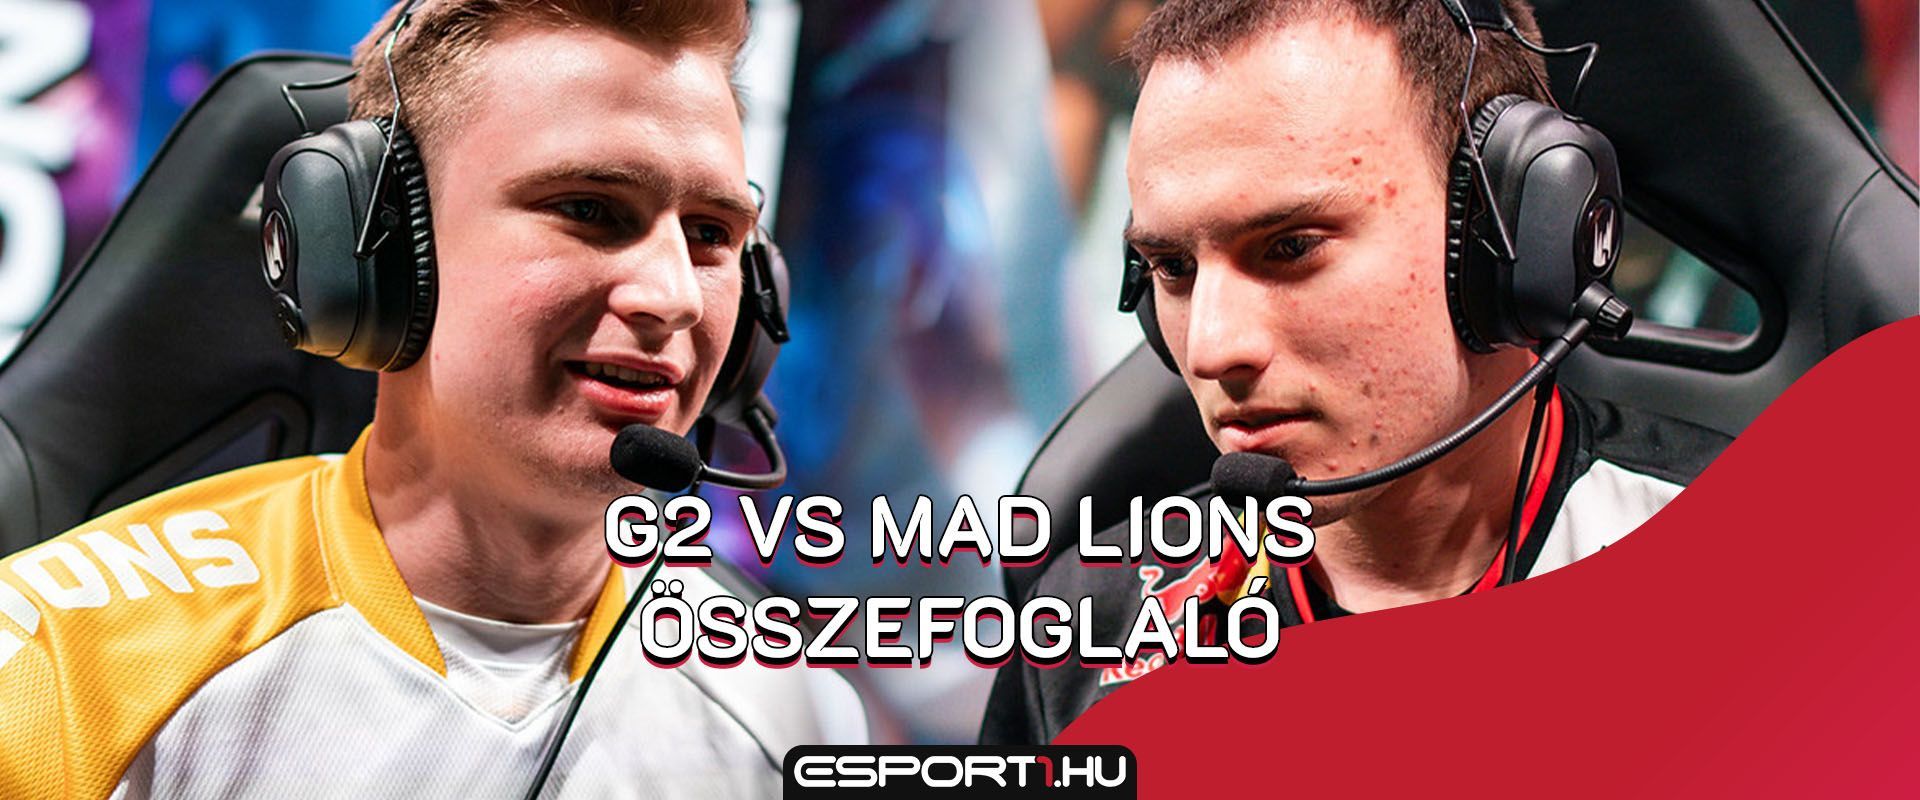 G2 vs MAD Lions: Négy mérkőzésen dőlt el a továbbjutás sorsa